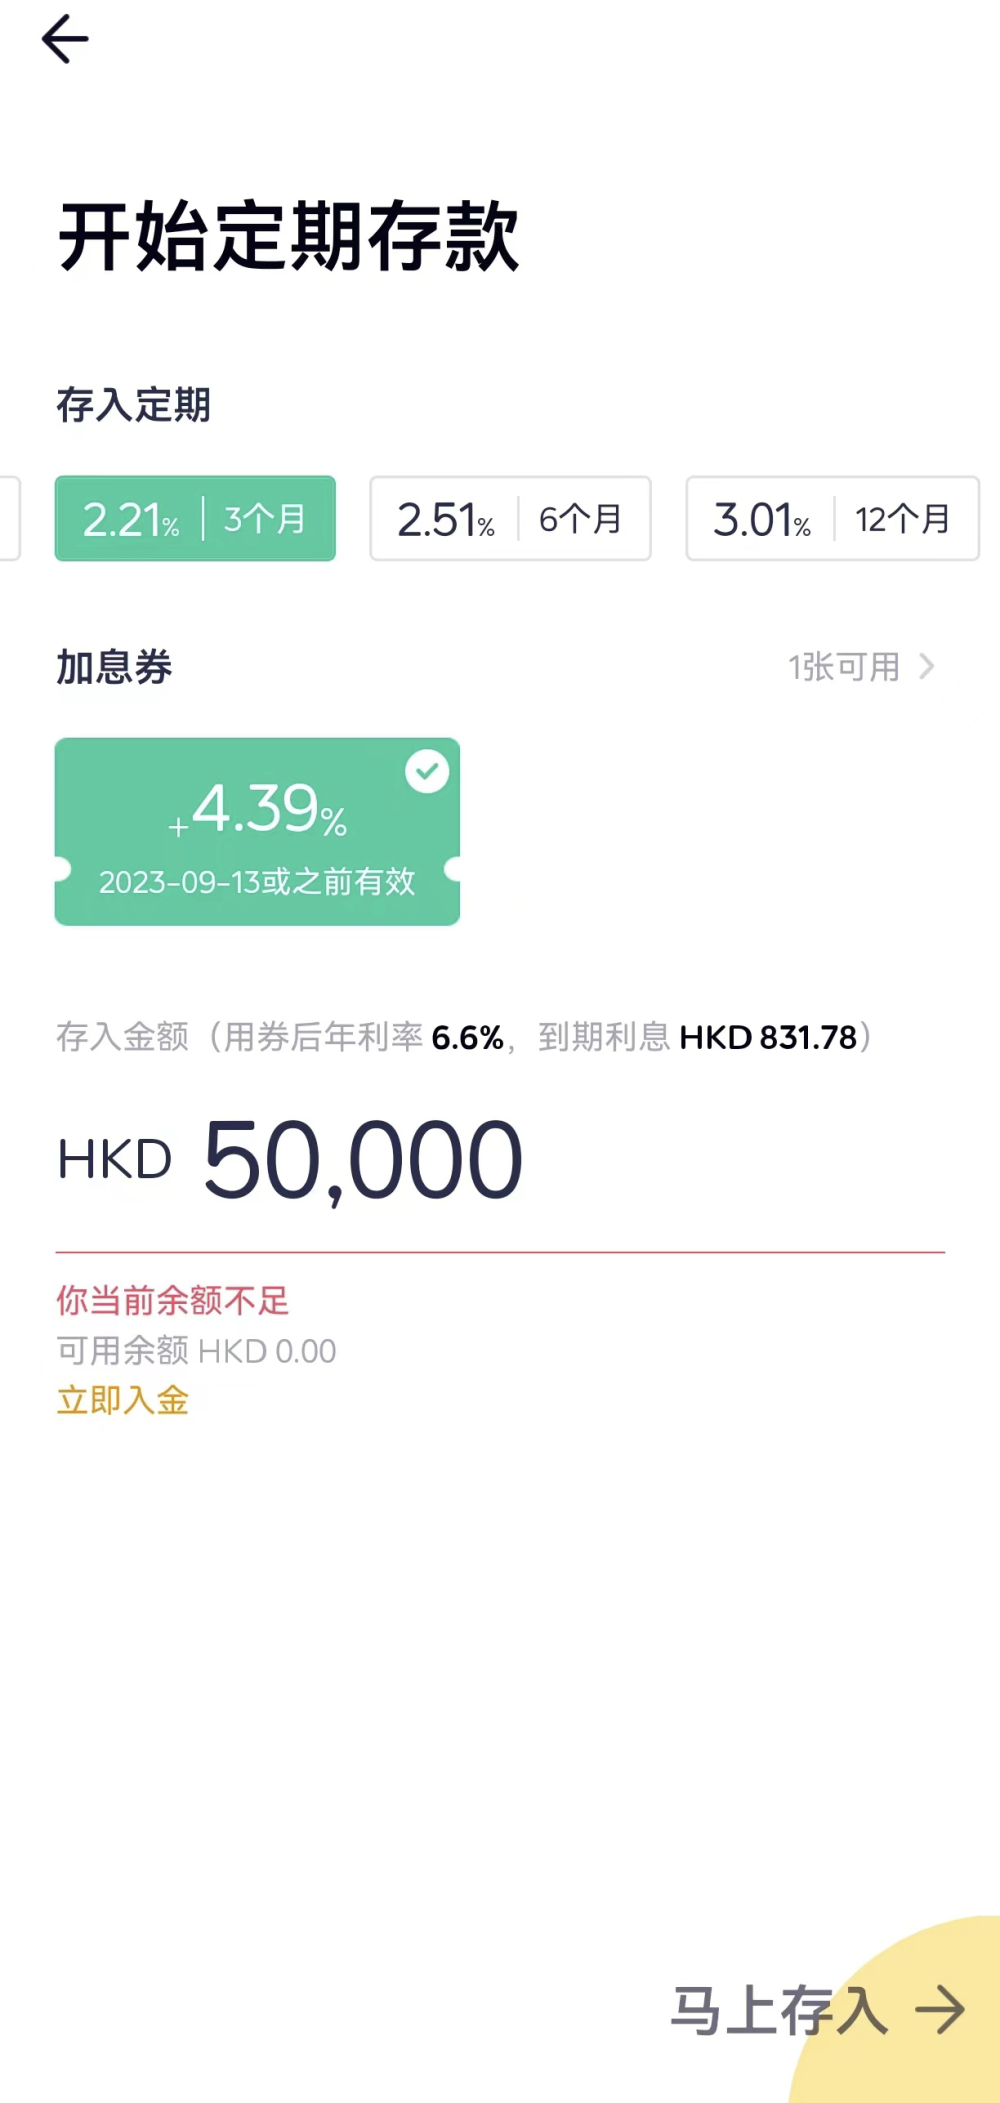 到香港开户存钱火了！提前一个月预约，短期利率最高9%